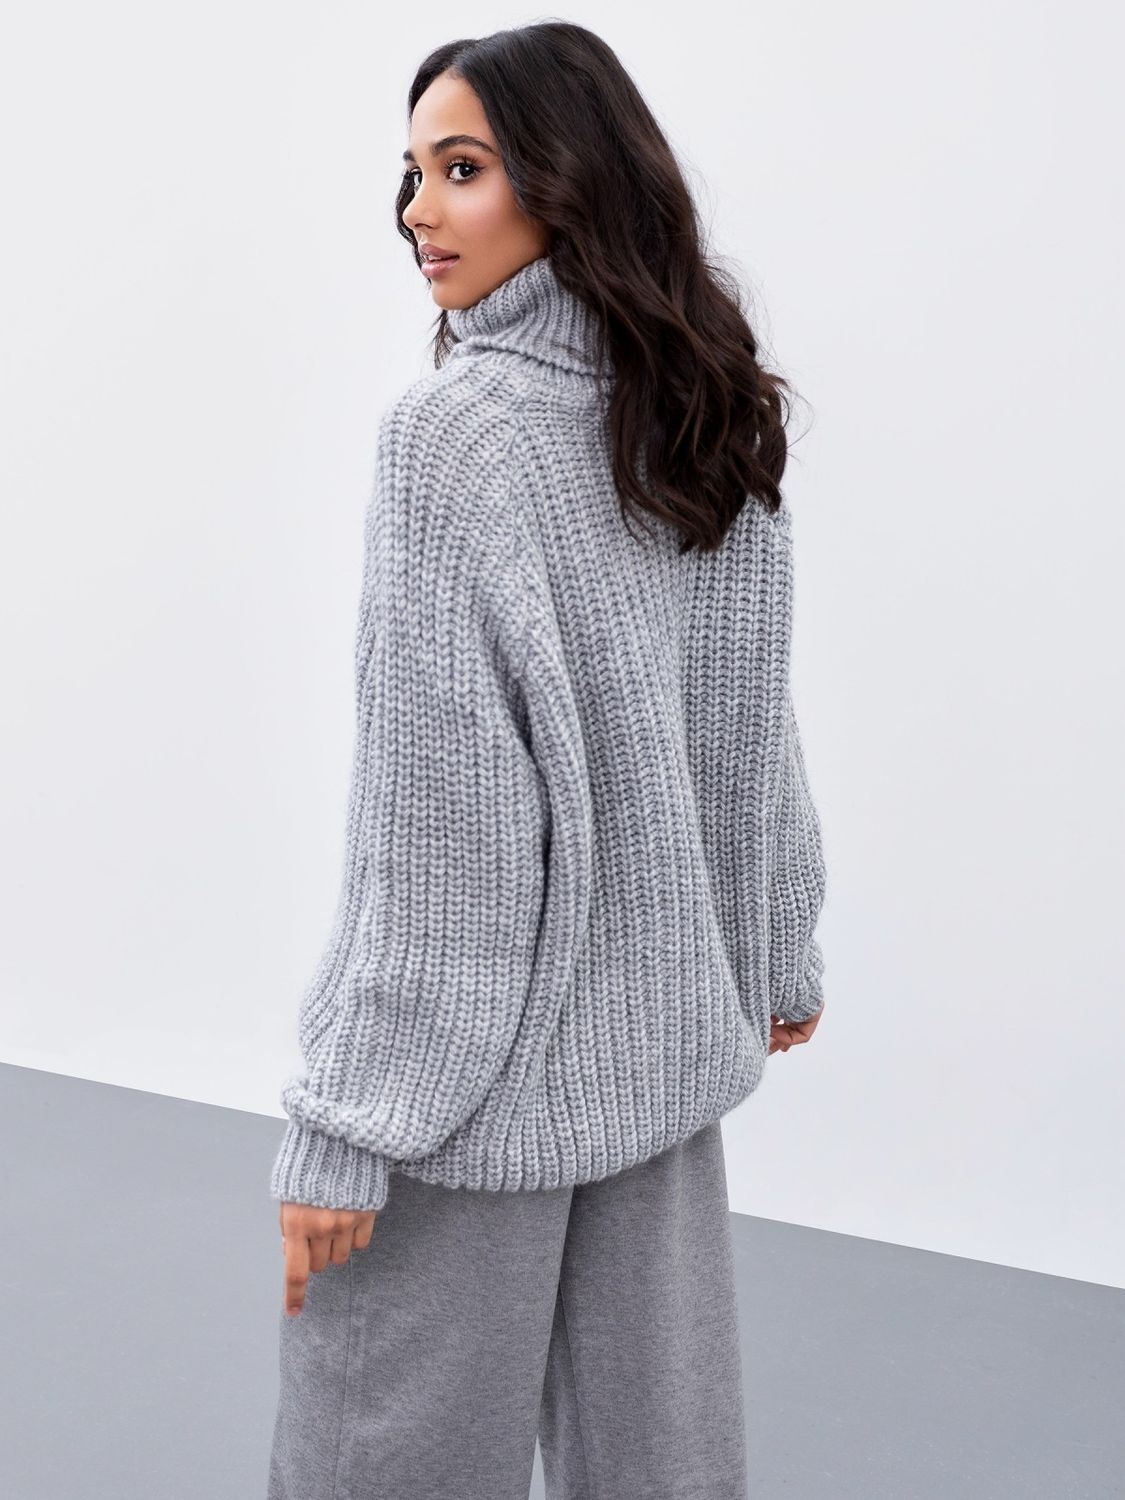 Об'ємний в'язаний светр з горлом сірого кольору - фото